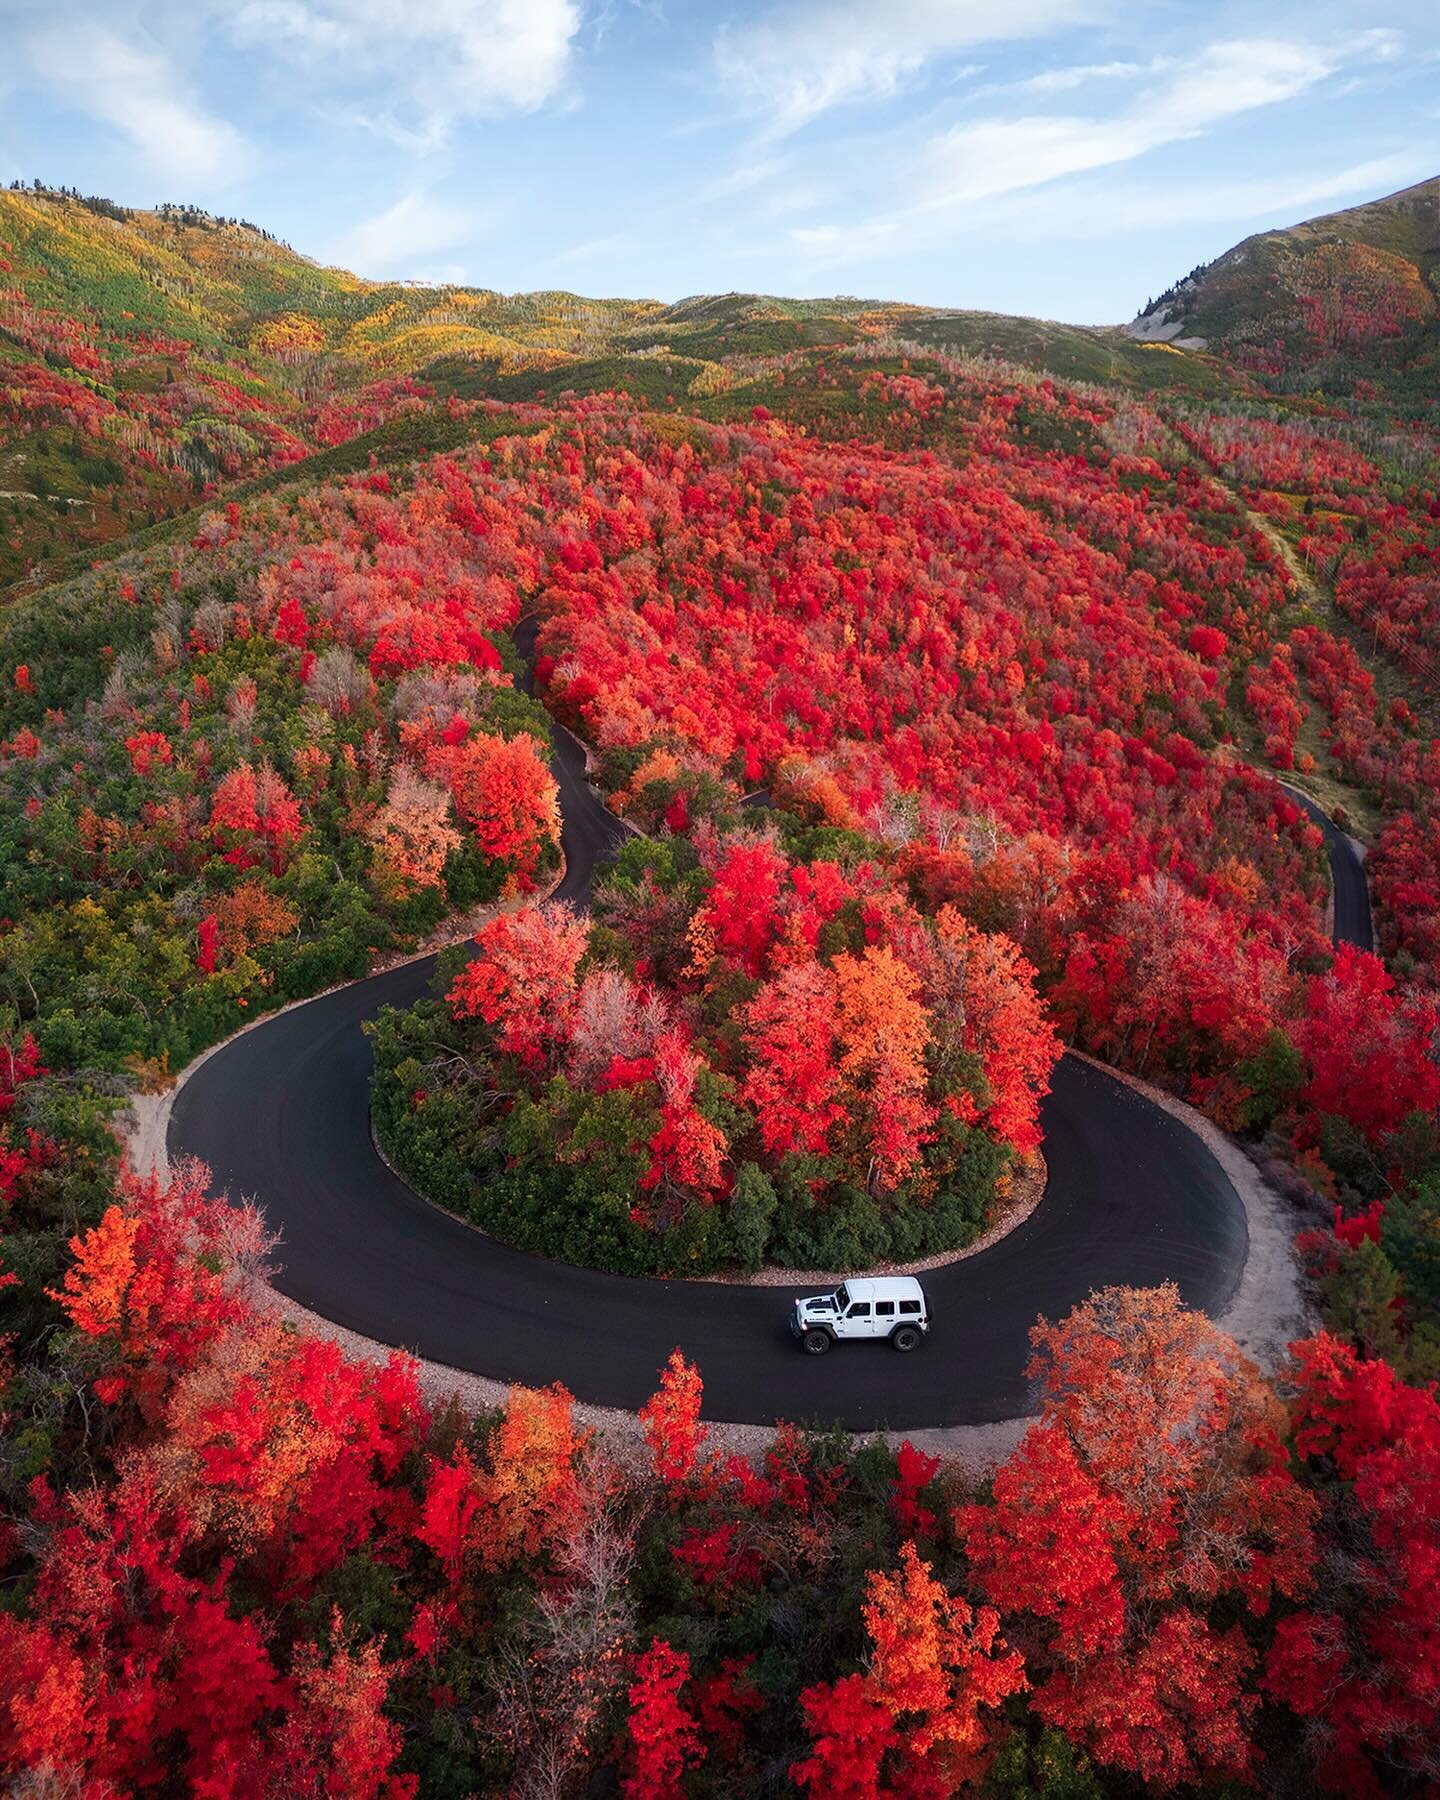 The colorful hills of Utah